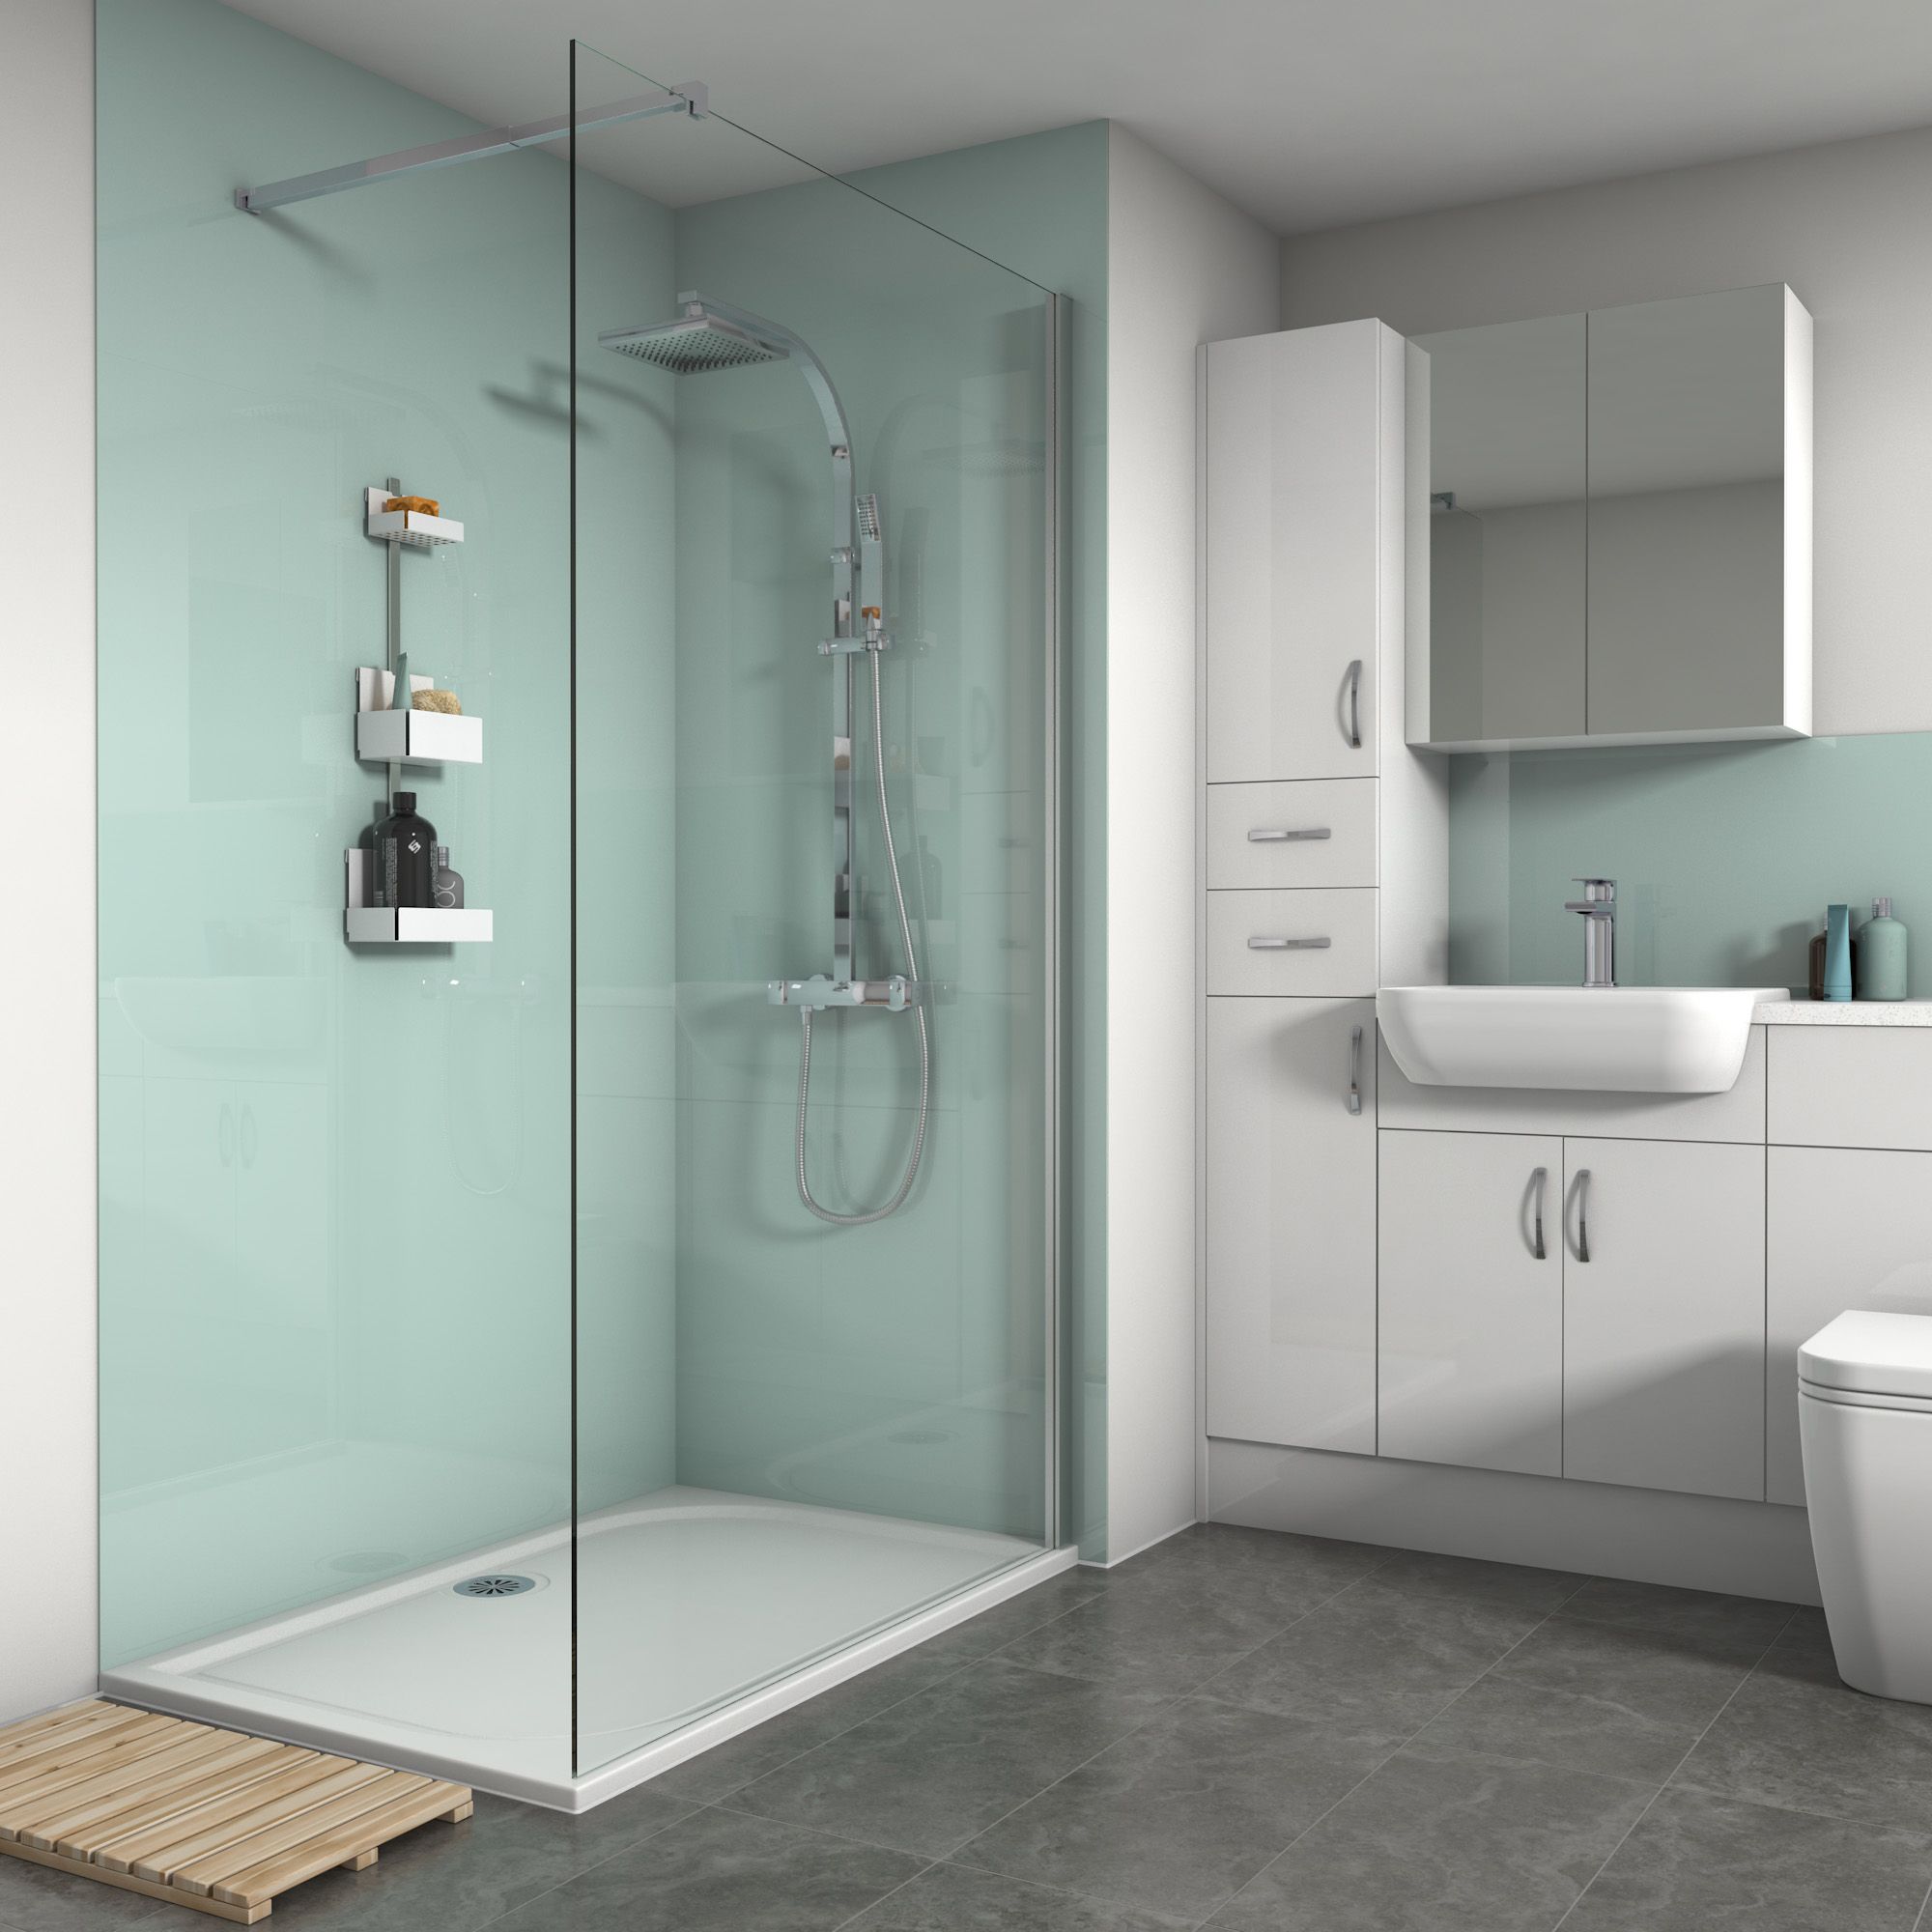 Splashwall Gloss Mist 3 sided Shower Panel kit (L)1200mm (W)1200mm (T)4mm